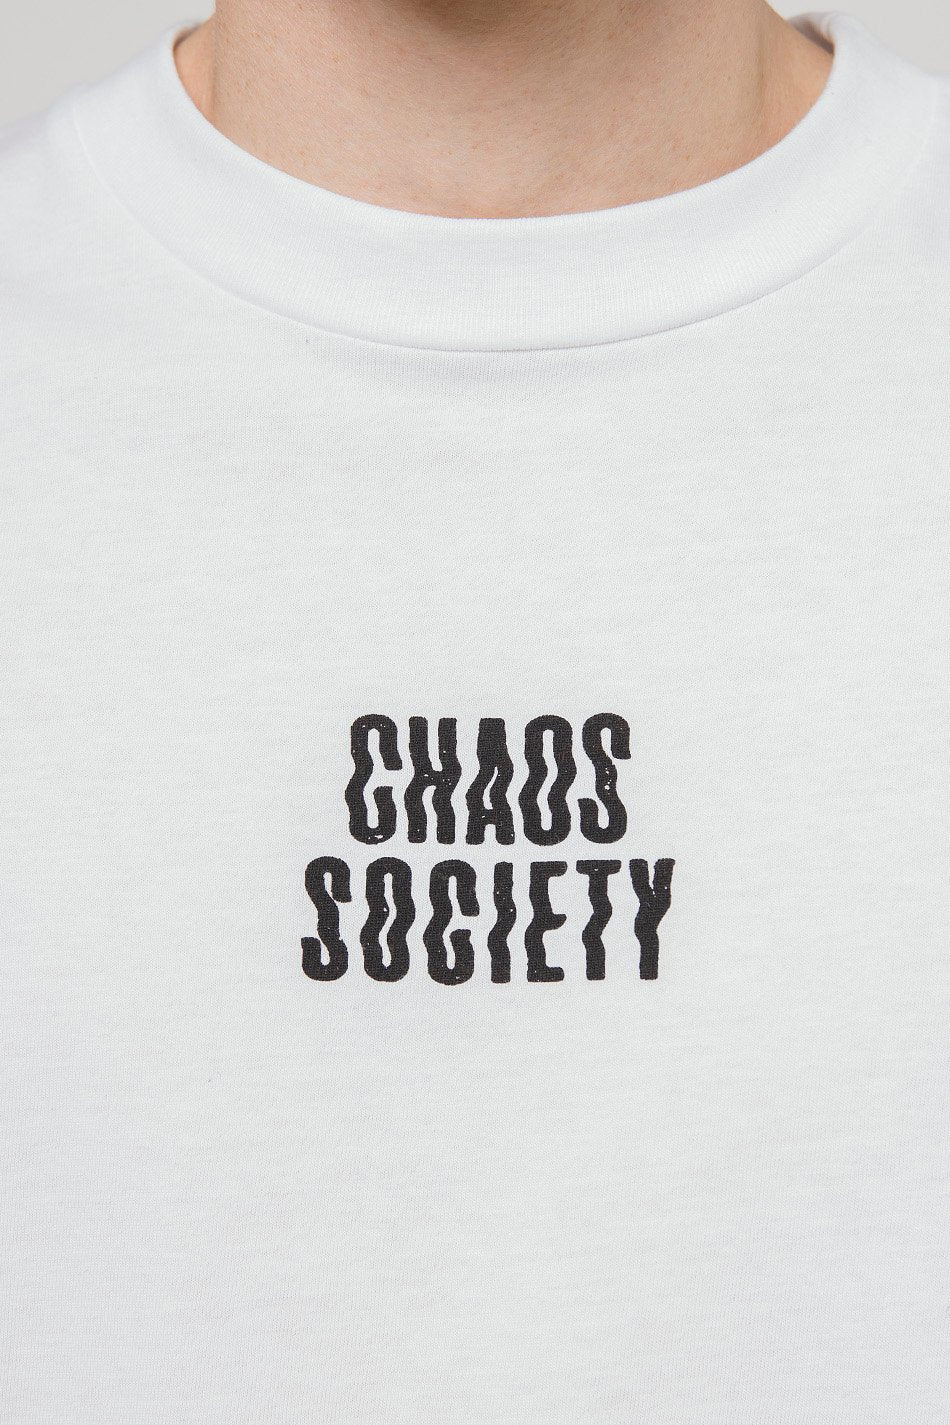 Camiseta Chaos Society